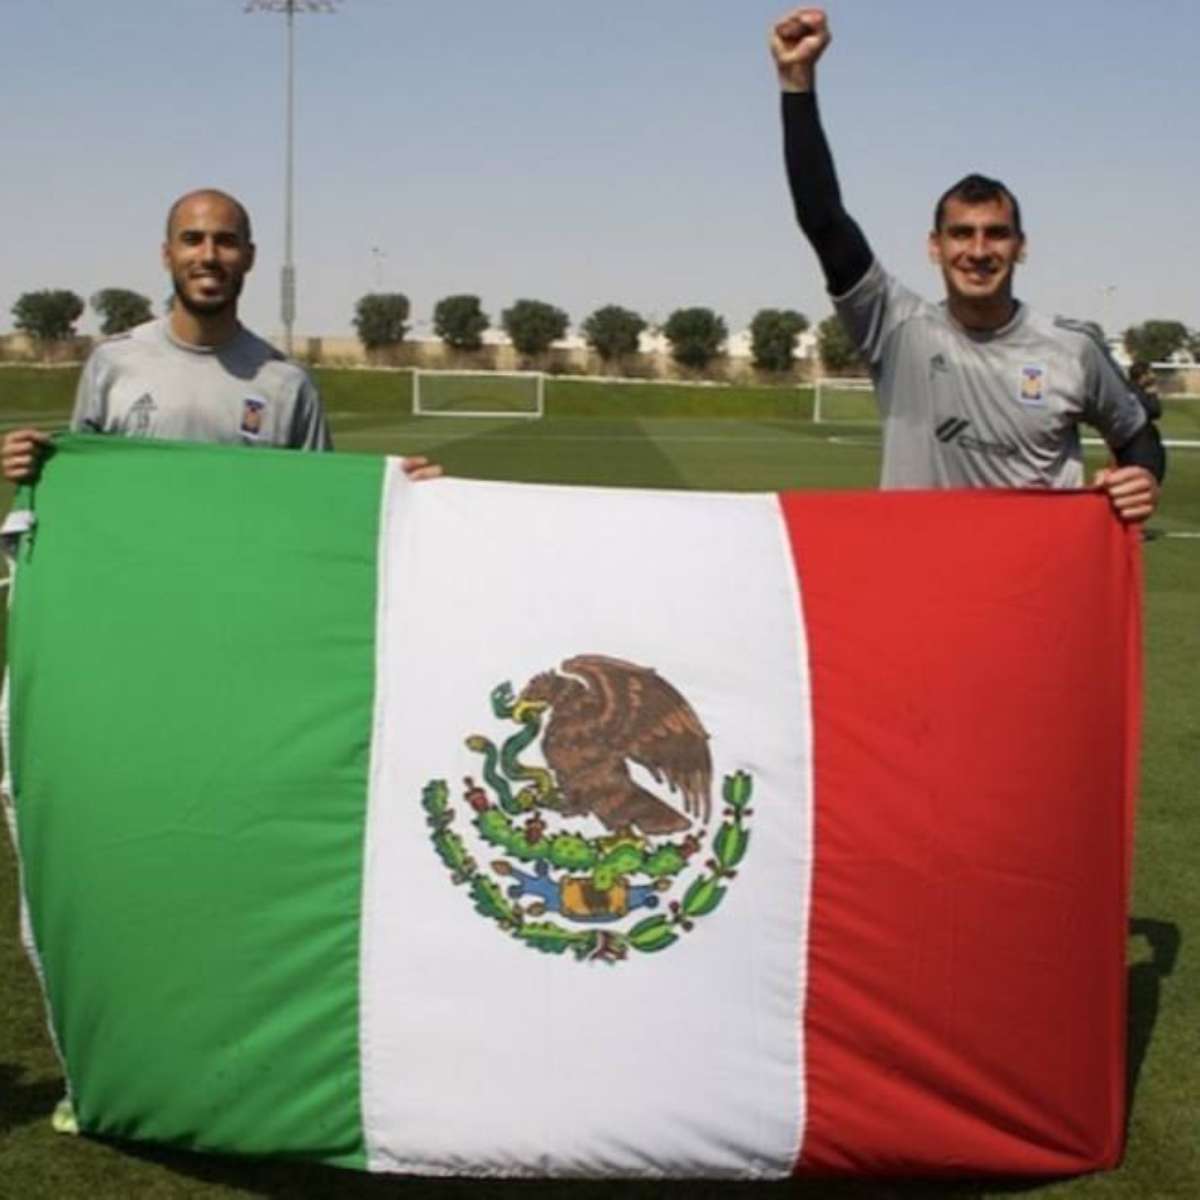 Experiência na América do Sul e sistema de franquias levam futebol mexicano  à final do Mundial